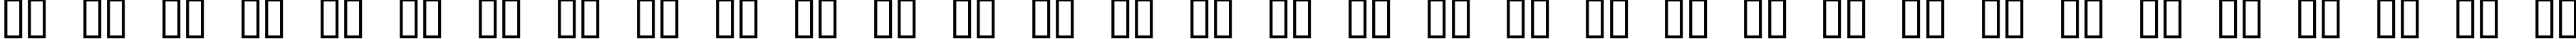 Пример написания русского алфавита шрифтом 04b_11